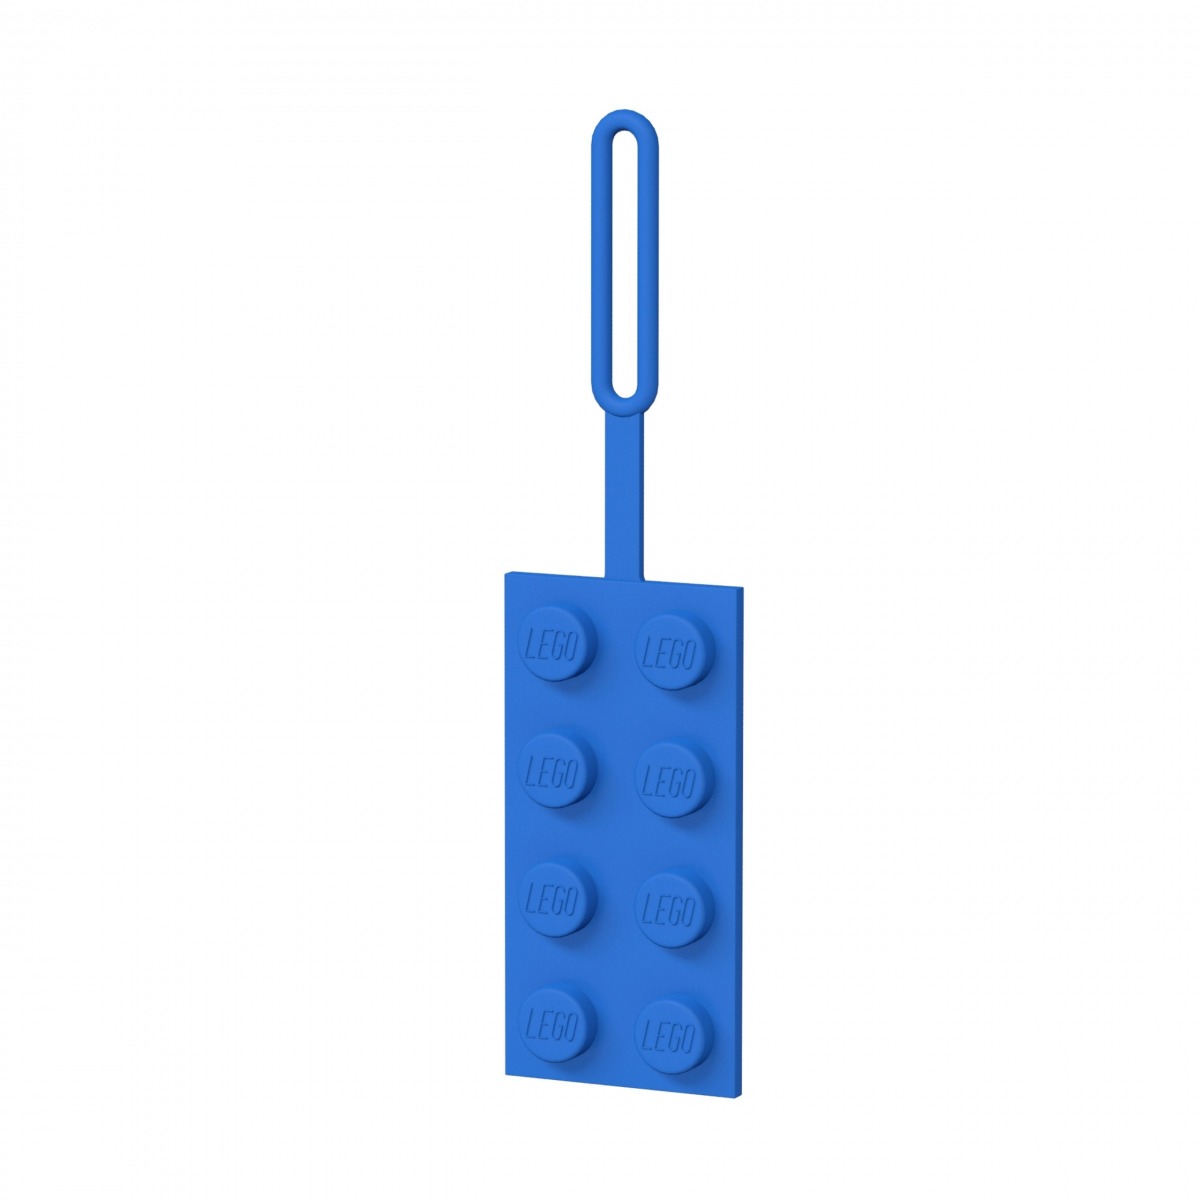 blauer lego 5005543 2x4 stein gepackanhanger scaled